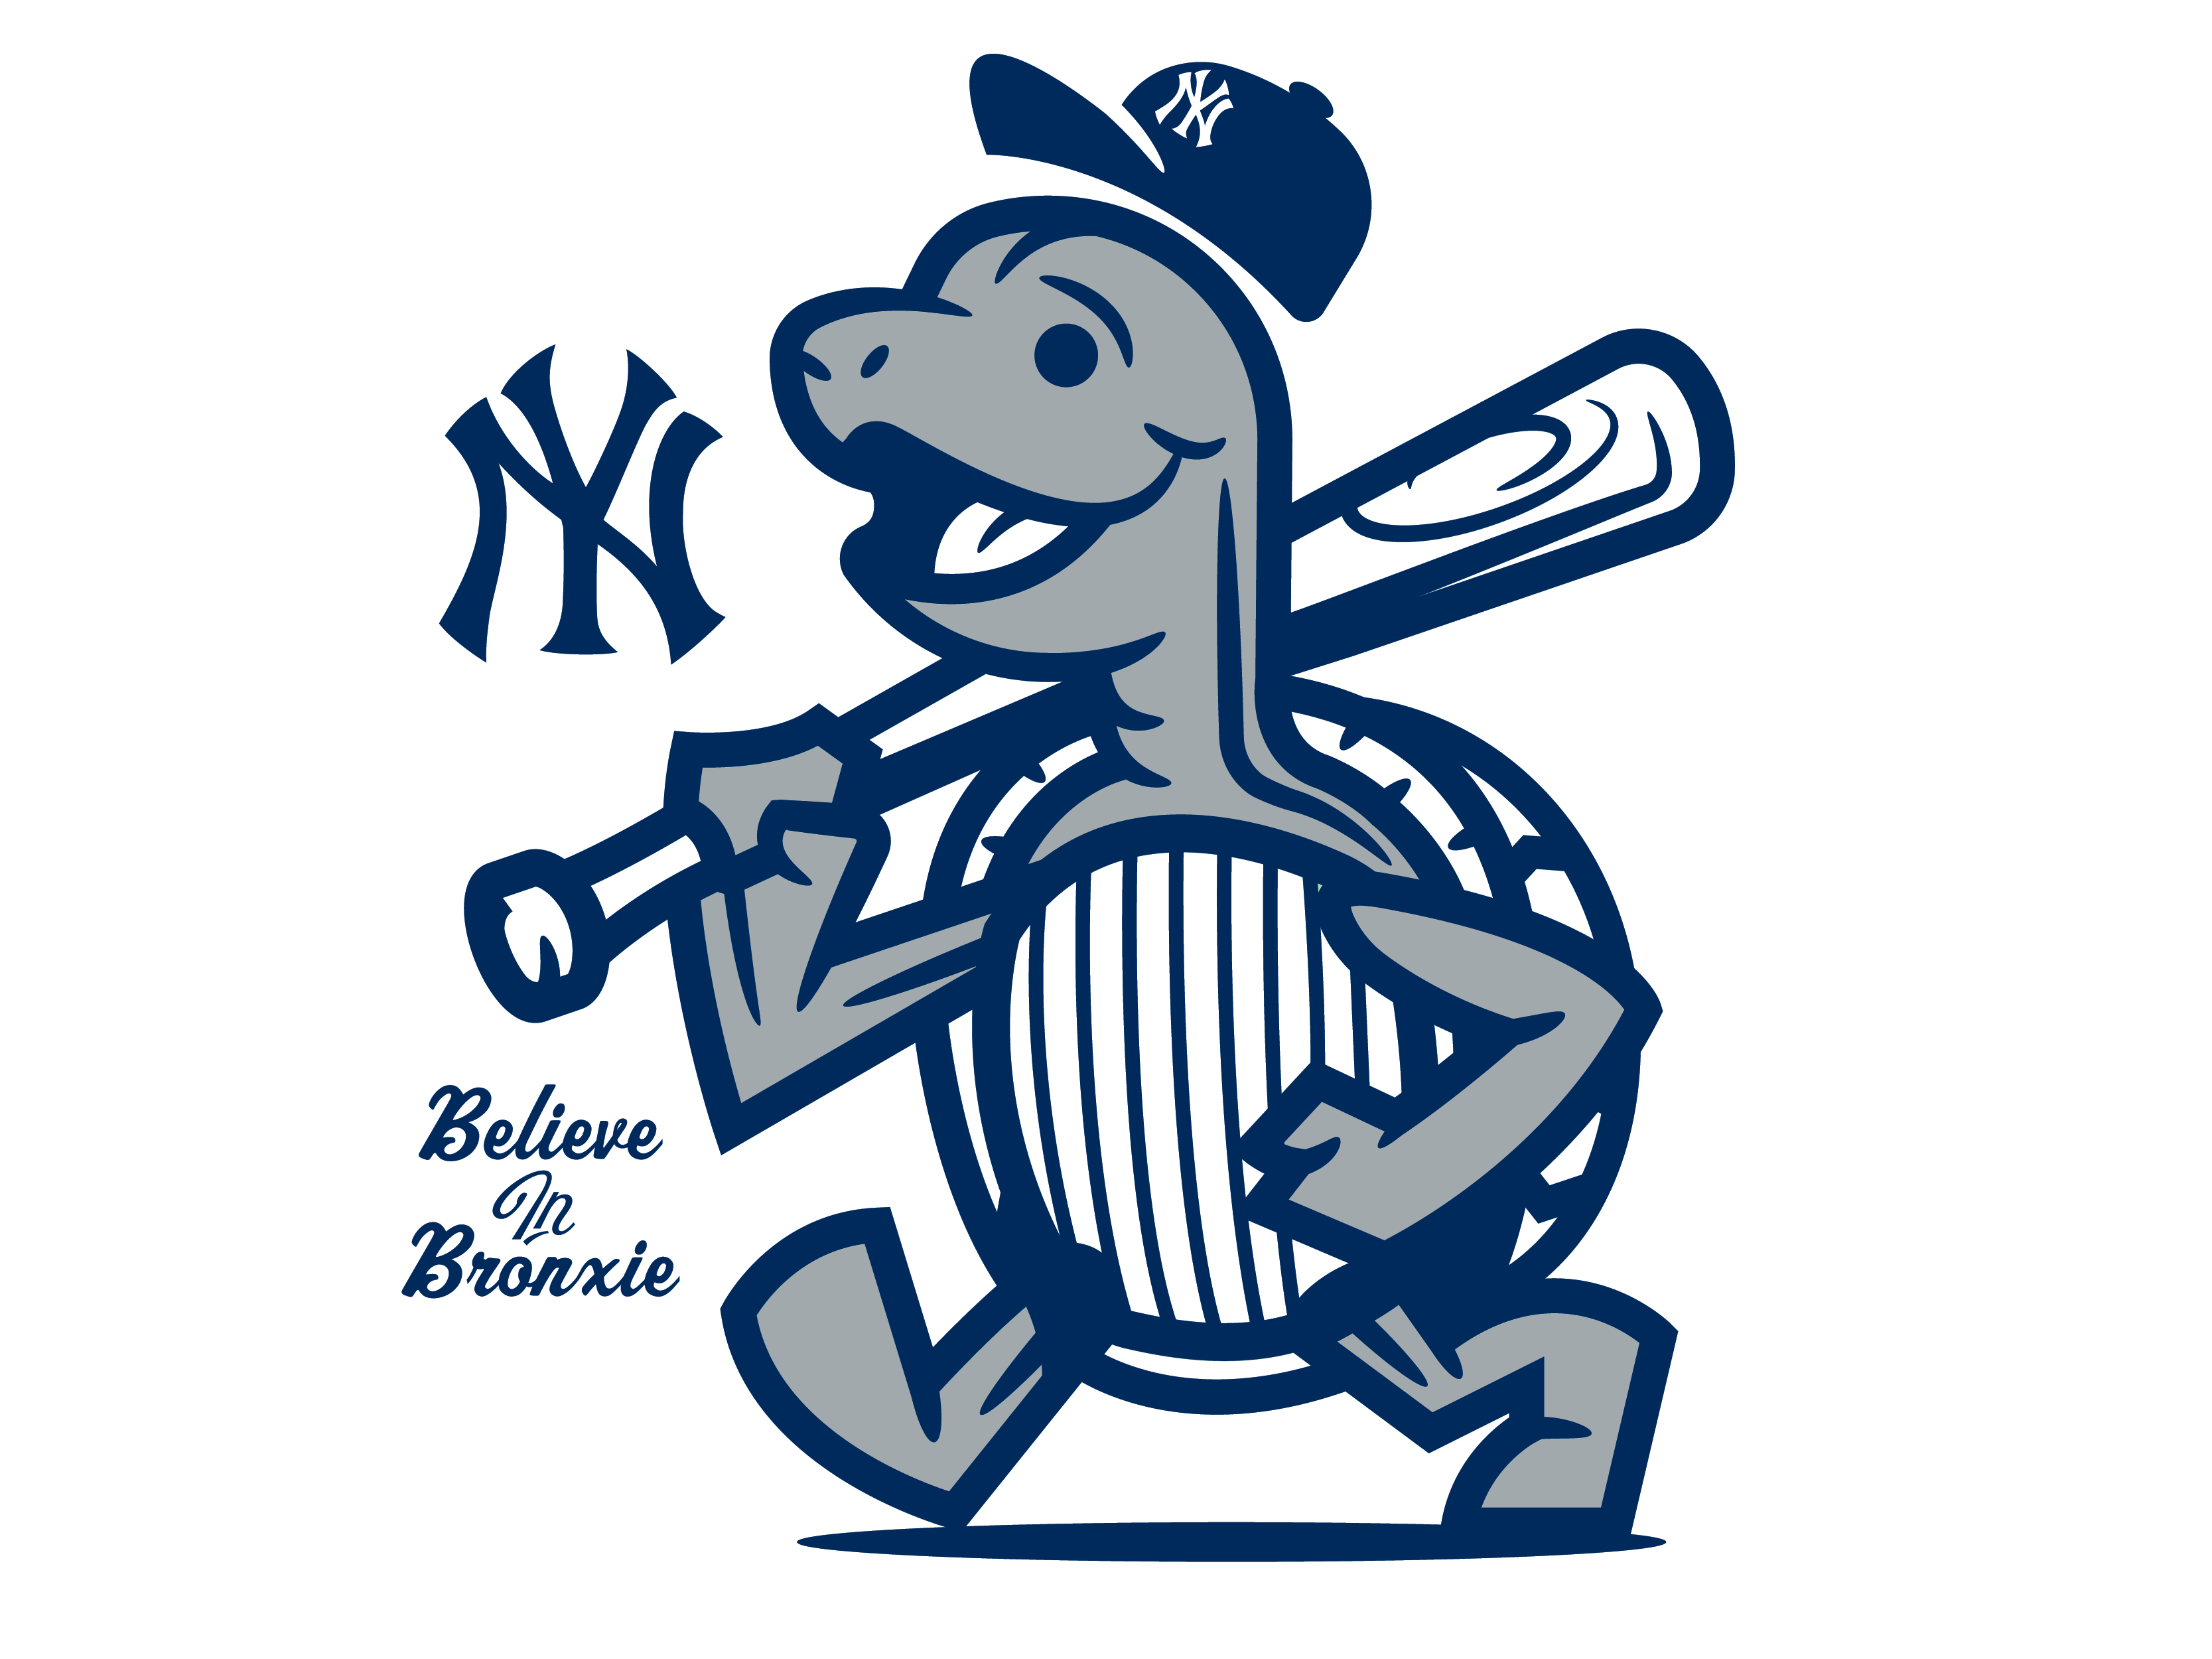 Believe in Bronxie by Ryan Foose on Dribbble